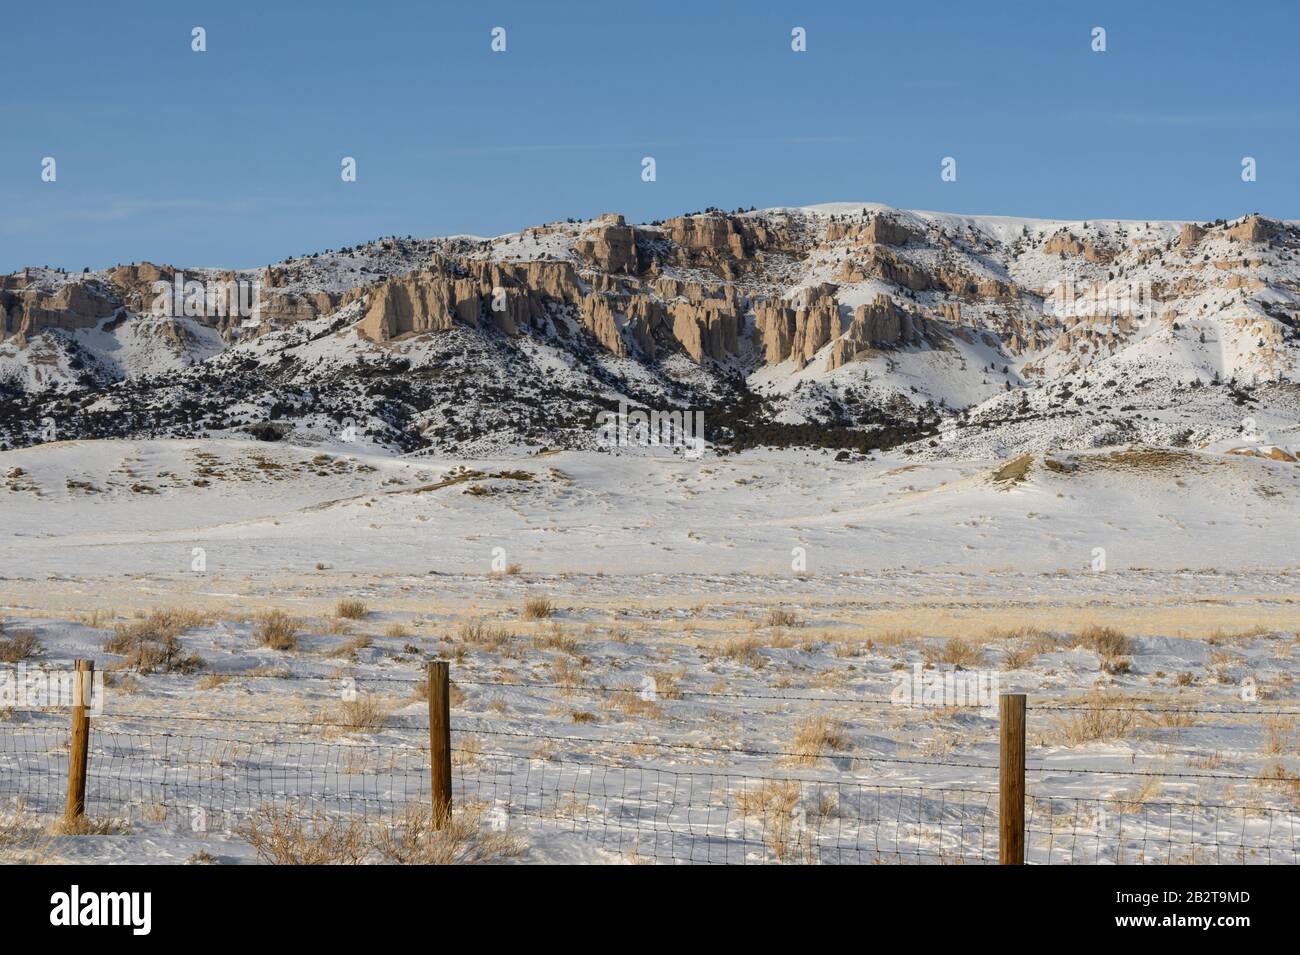 Paysage du Wyoming scène d'une colline enneigée et de l'affleurement rocheux dans une zone rurale. Banque D'Images